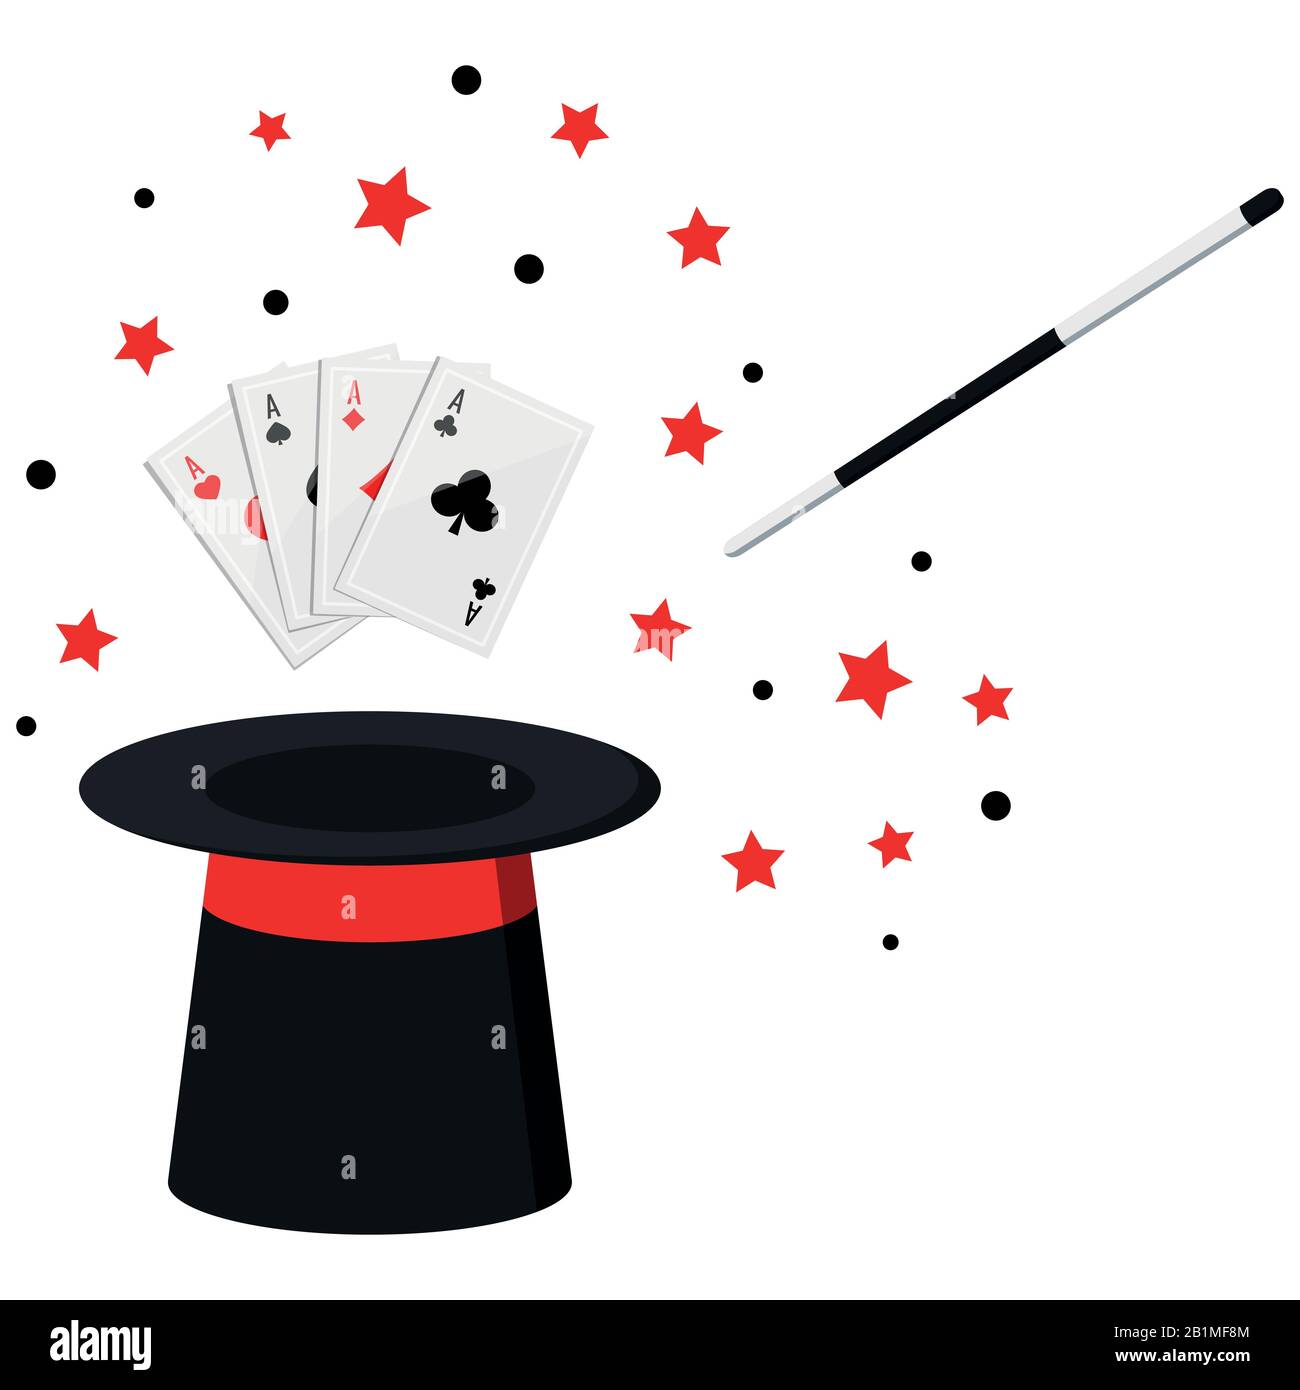 Cappello nero del mago, cappello magico con assi quattro di un poker tipo,  bacchetta magica in azione e stella isolata su sfondo bianco Immagine e  Vettoriale - Alamy